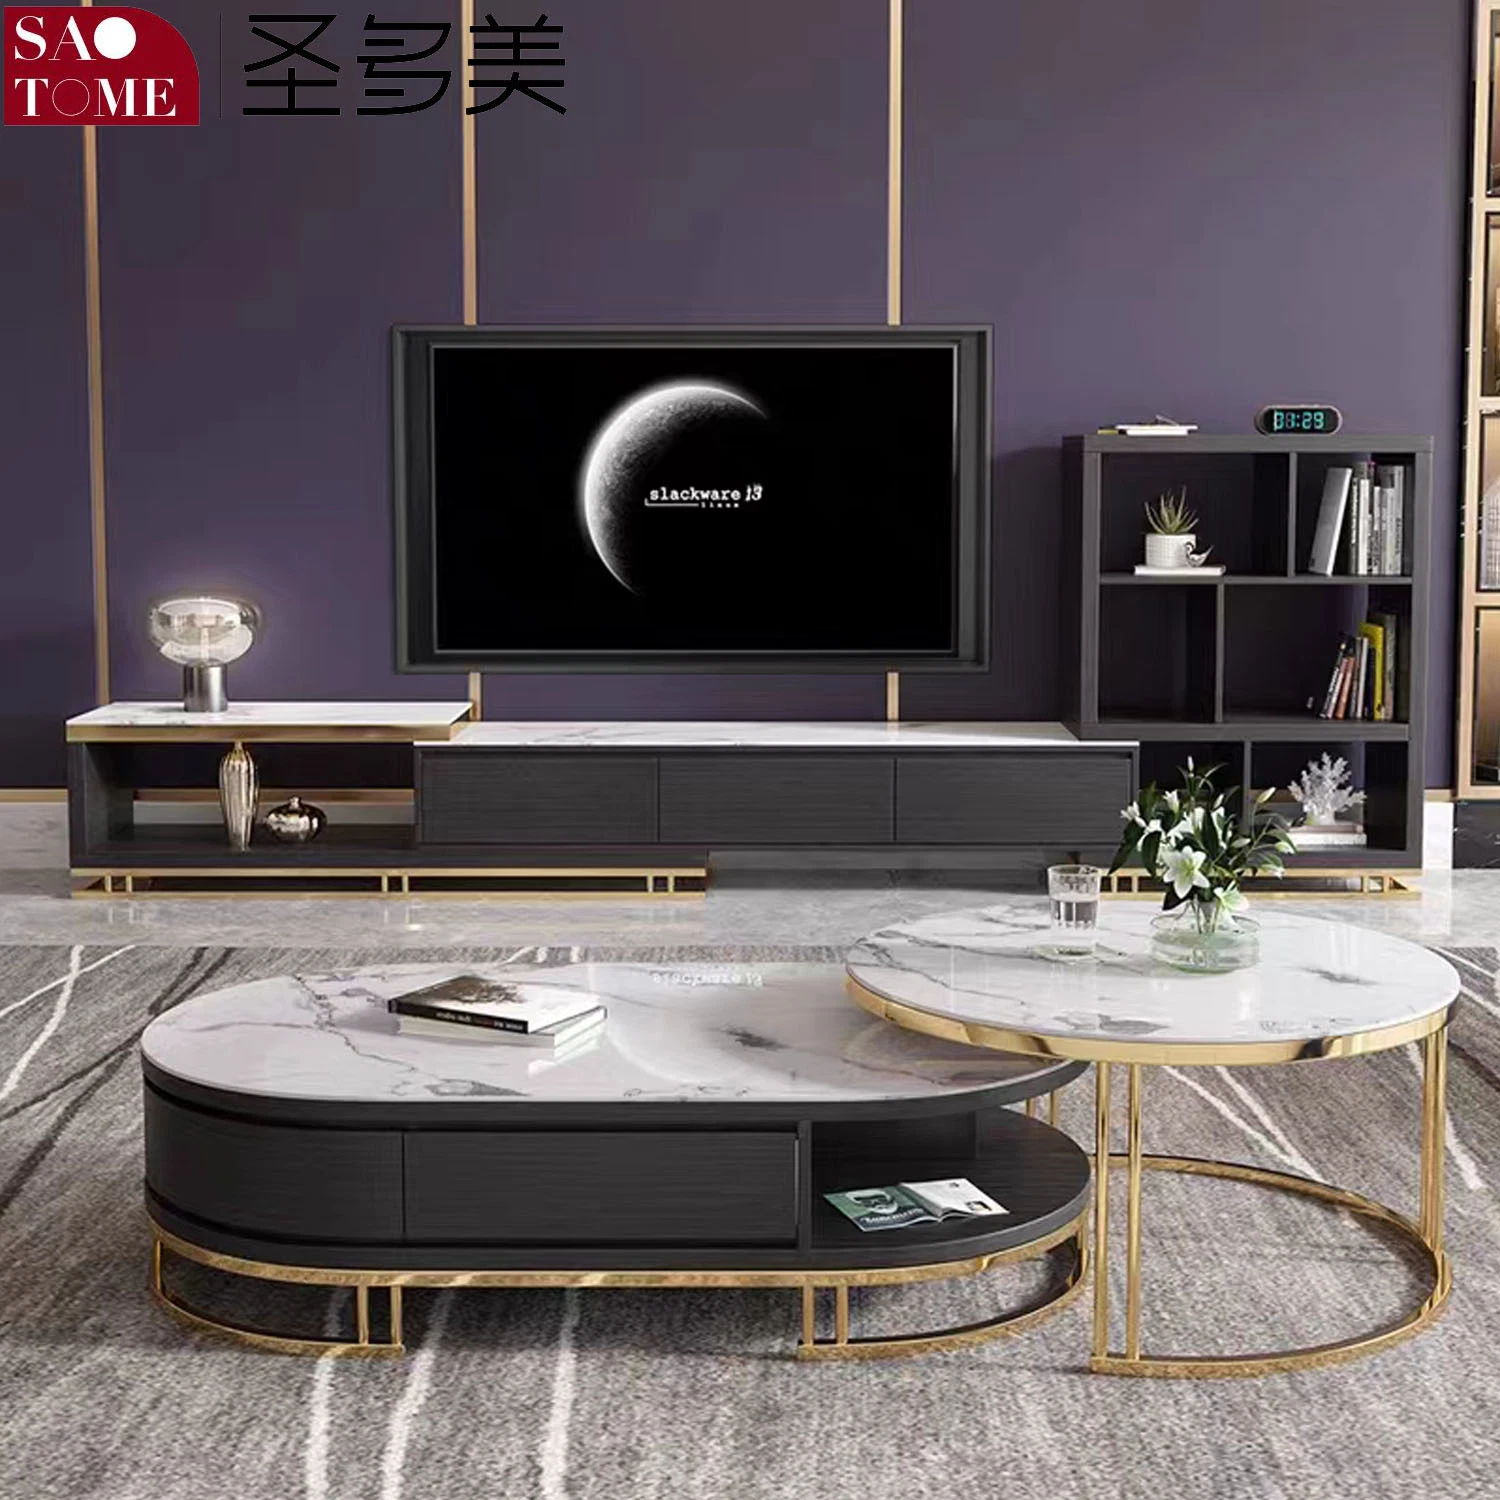 Table basse en plaque de roche moderne, meuble TV, buffet, combinaison de table basse ronde en fer, mobilier de salon.